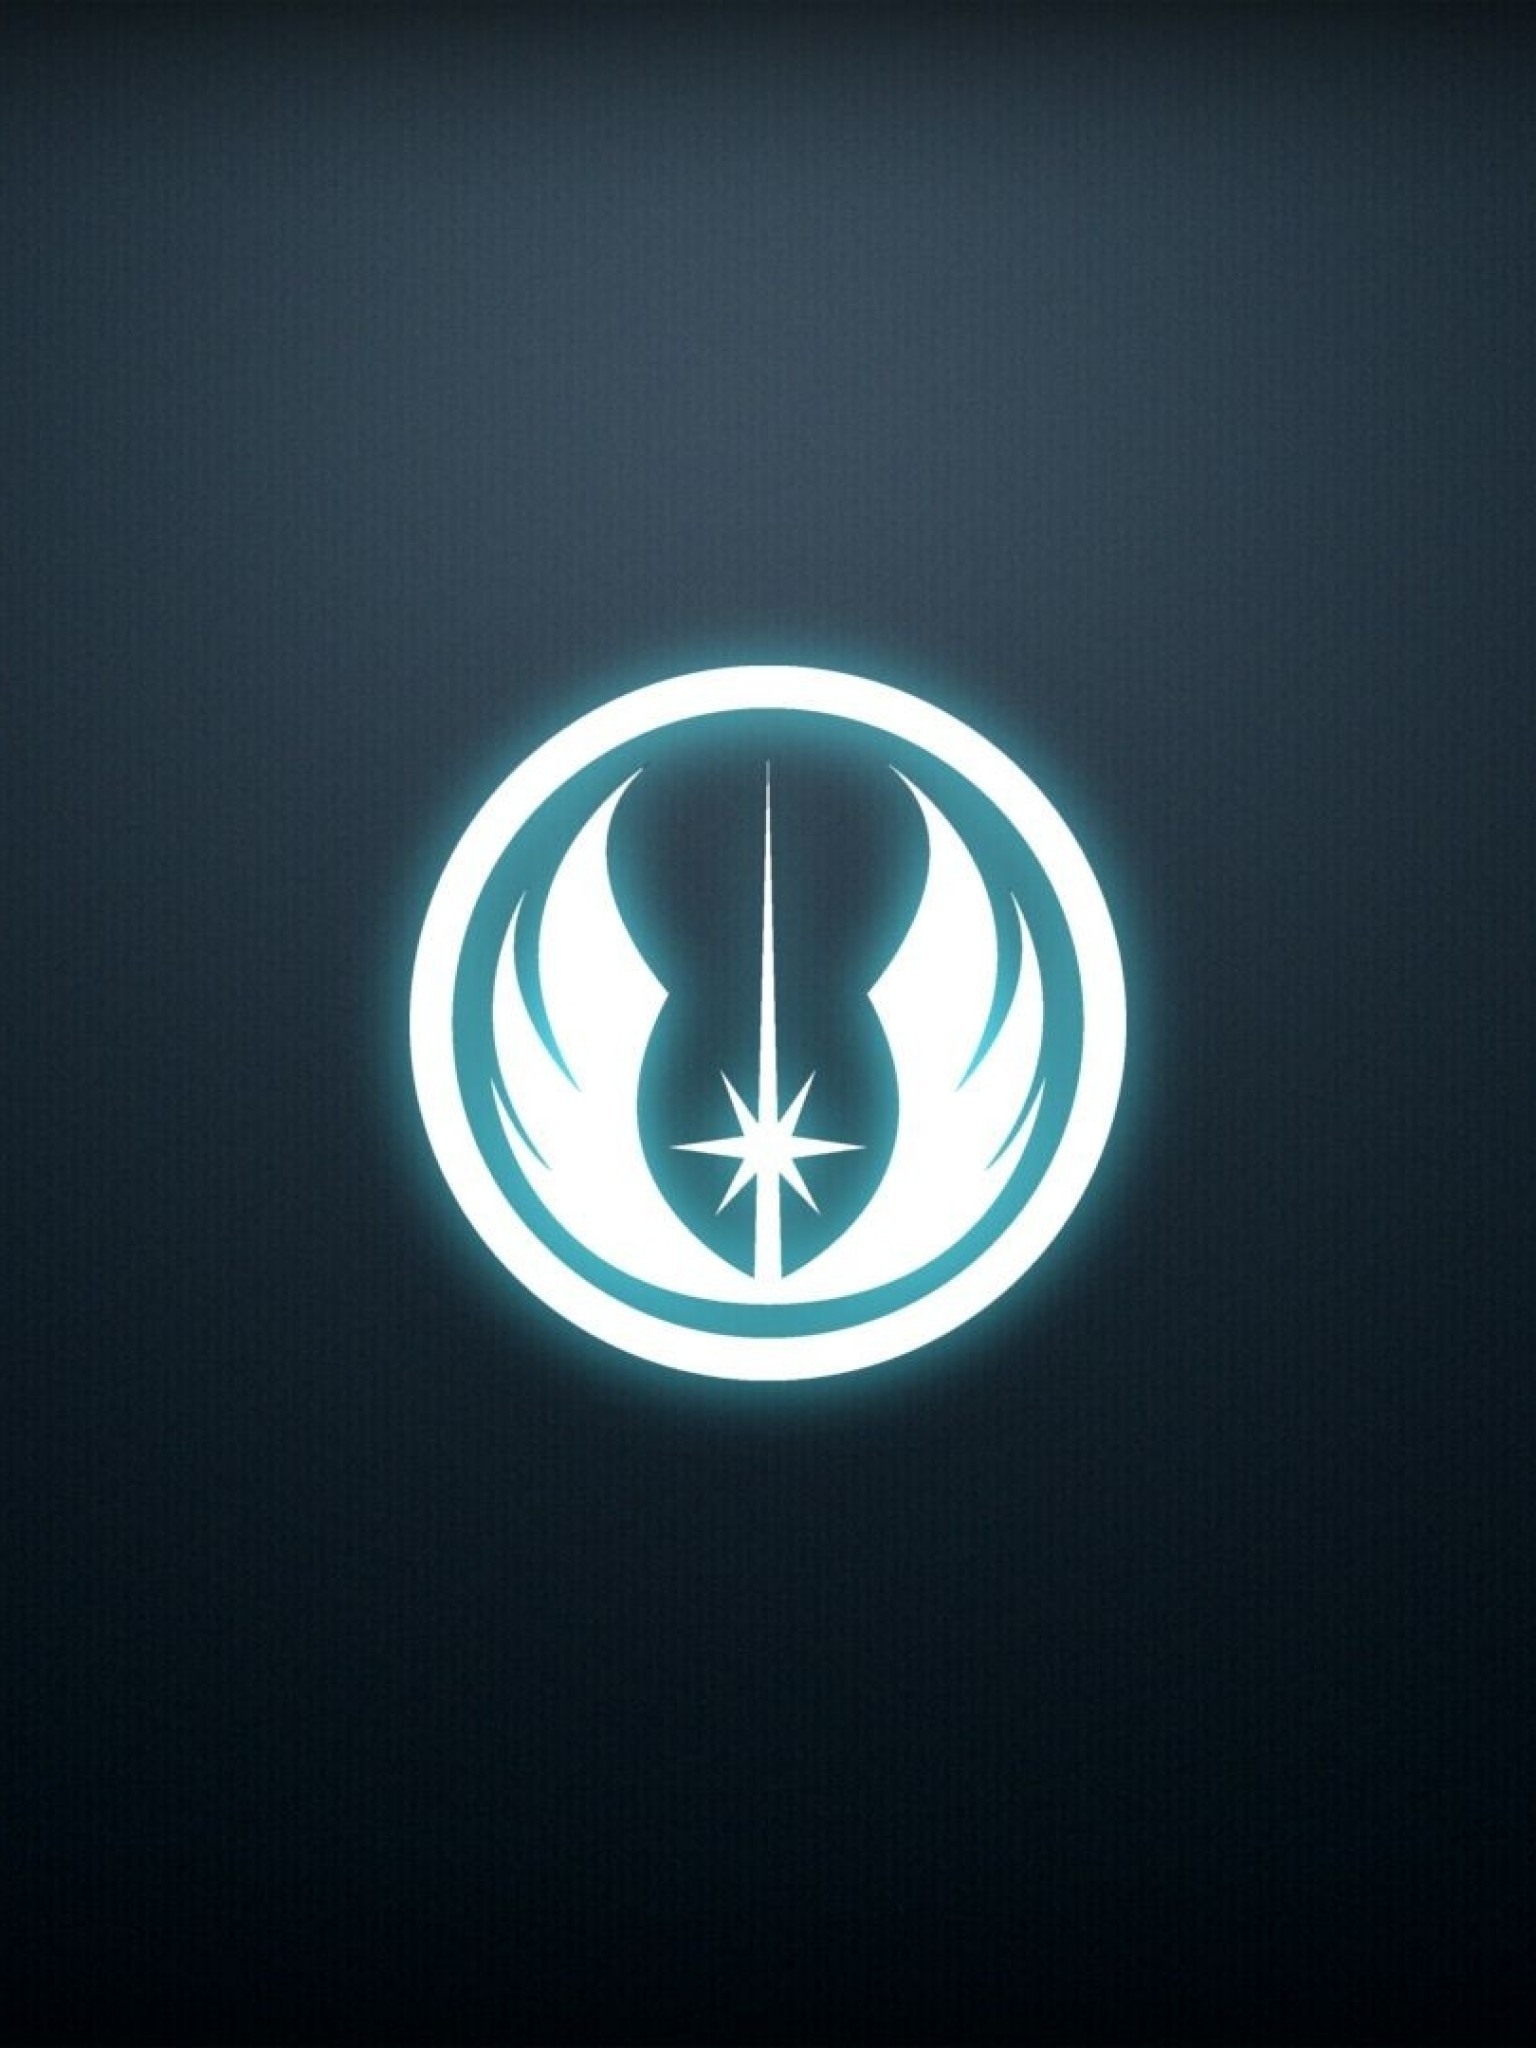 Star Wars, Jedi, Logo